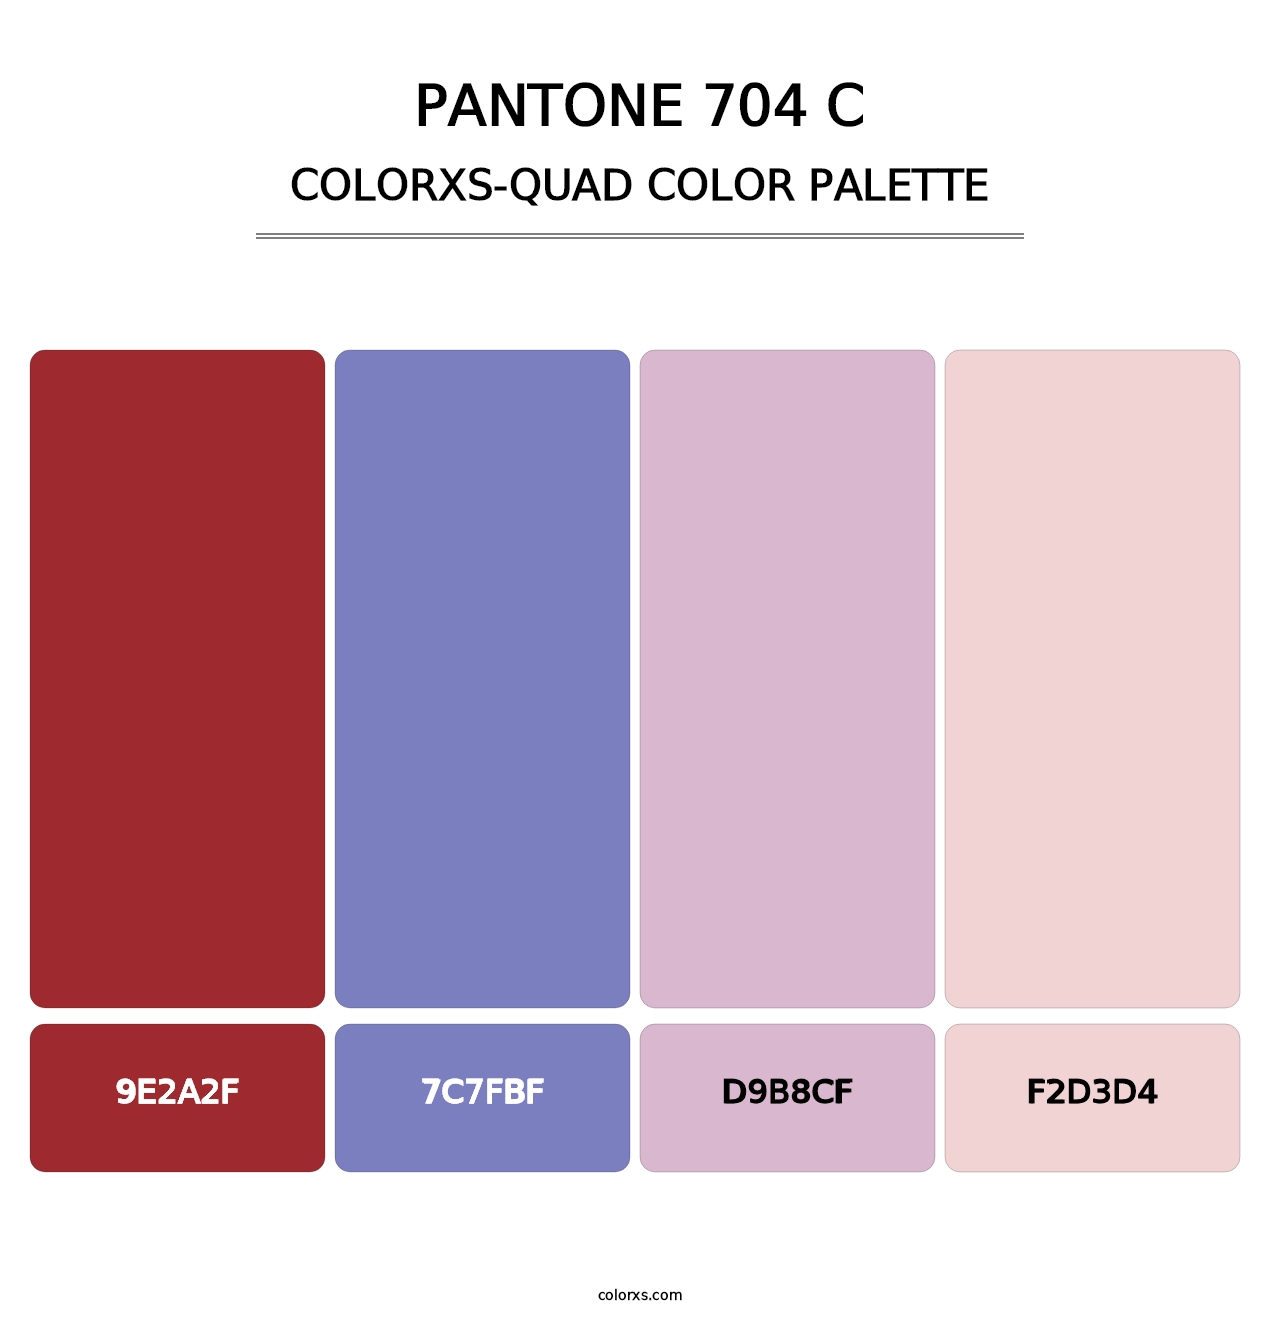 PANTONE 704 C - Colorxs Quad Palette